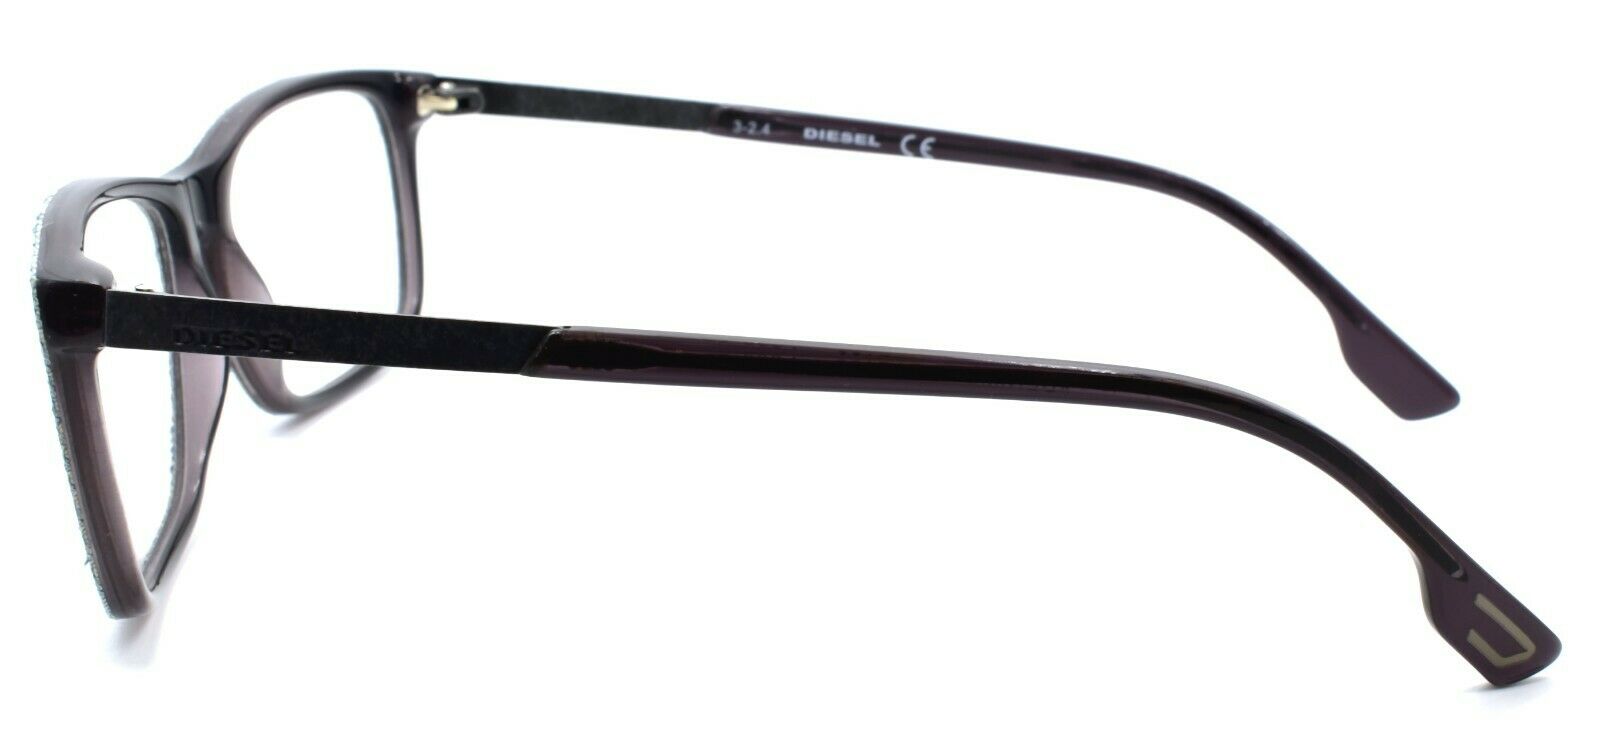 3-Diesel DL5166 003 Men's Eyeglasses Frames 53-16-145 Spotted Denim / Grey-664689704125-IKSpecs